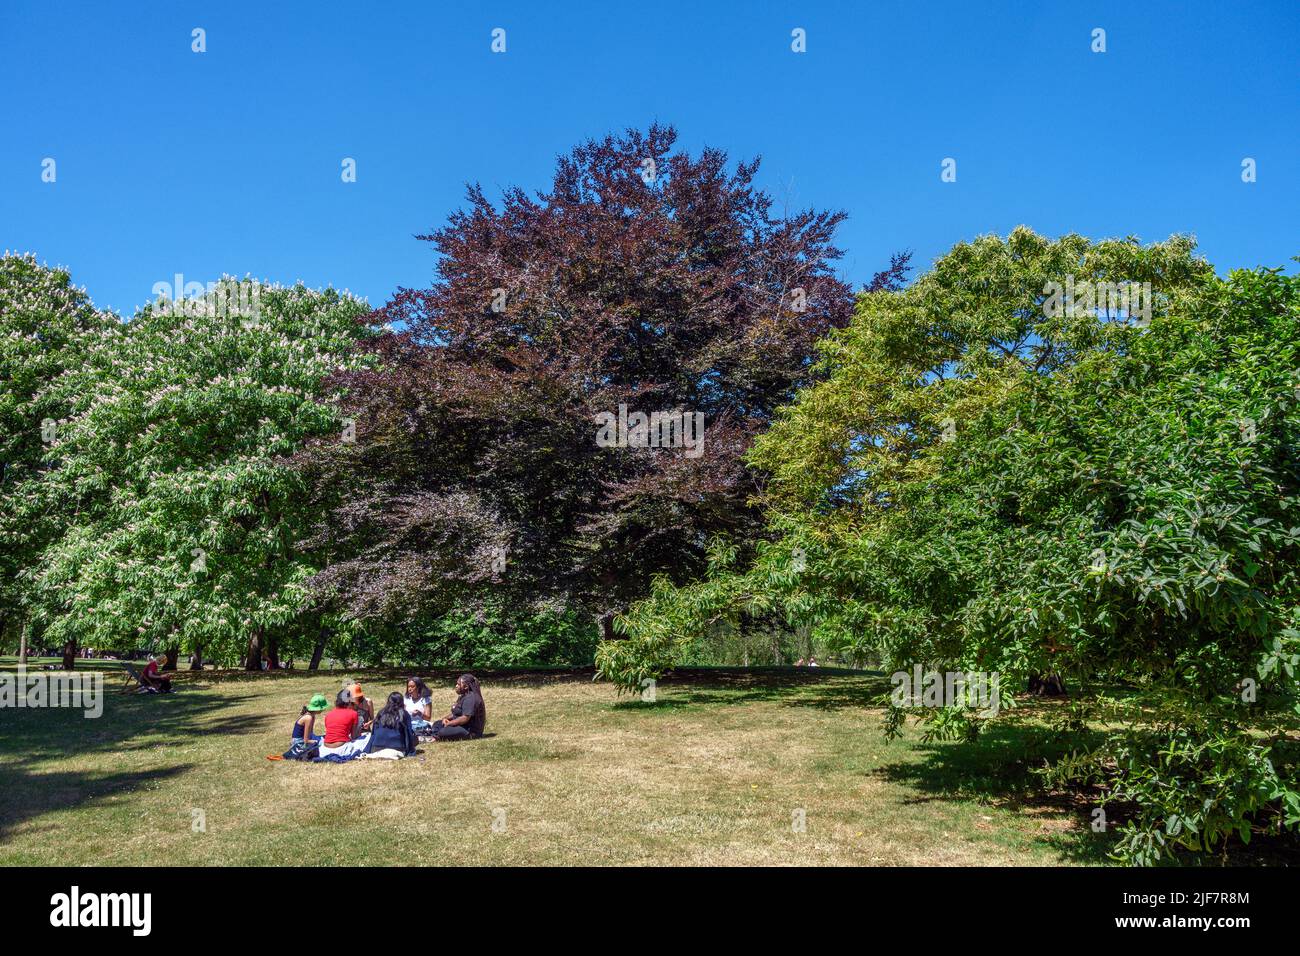 Personnes ayant un pique-nique à St James's Park, Londres, Angleterre, Royaume-Uni Banque D'Images